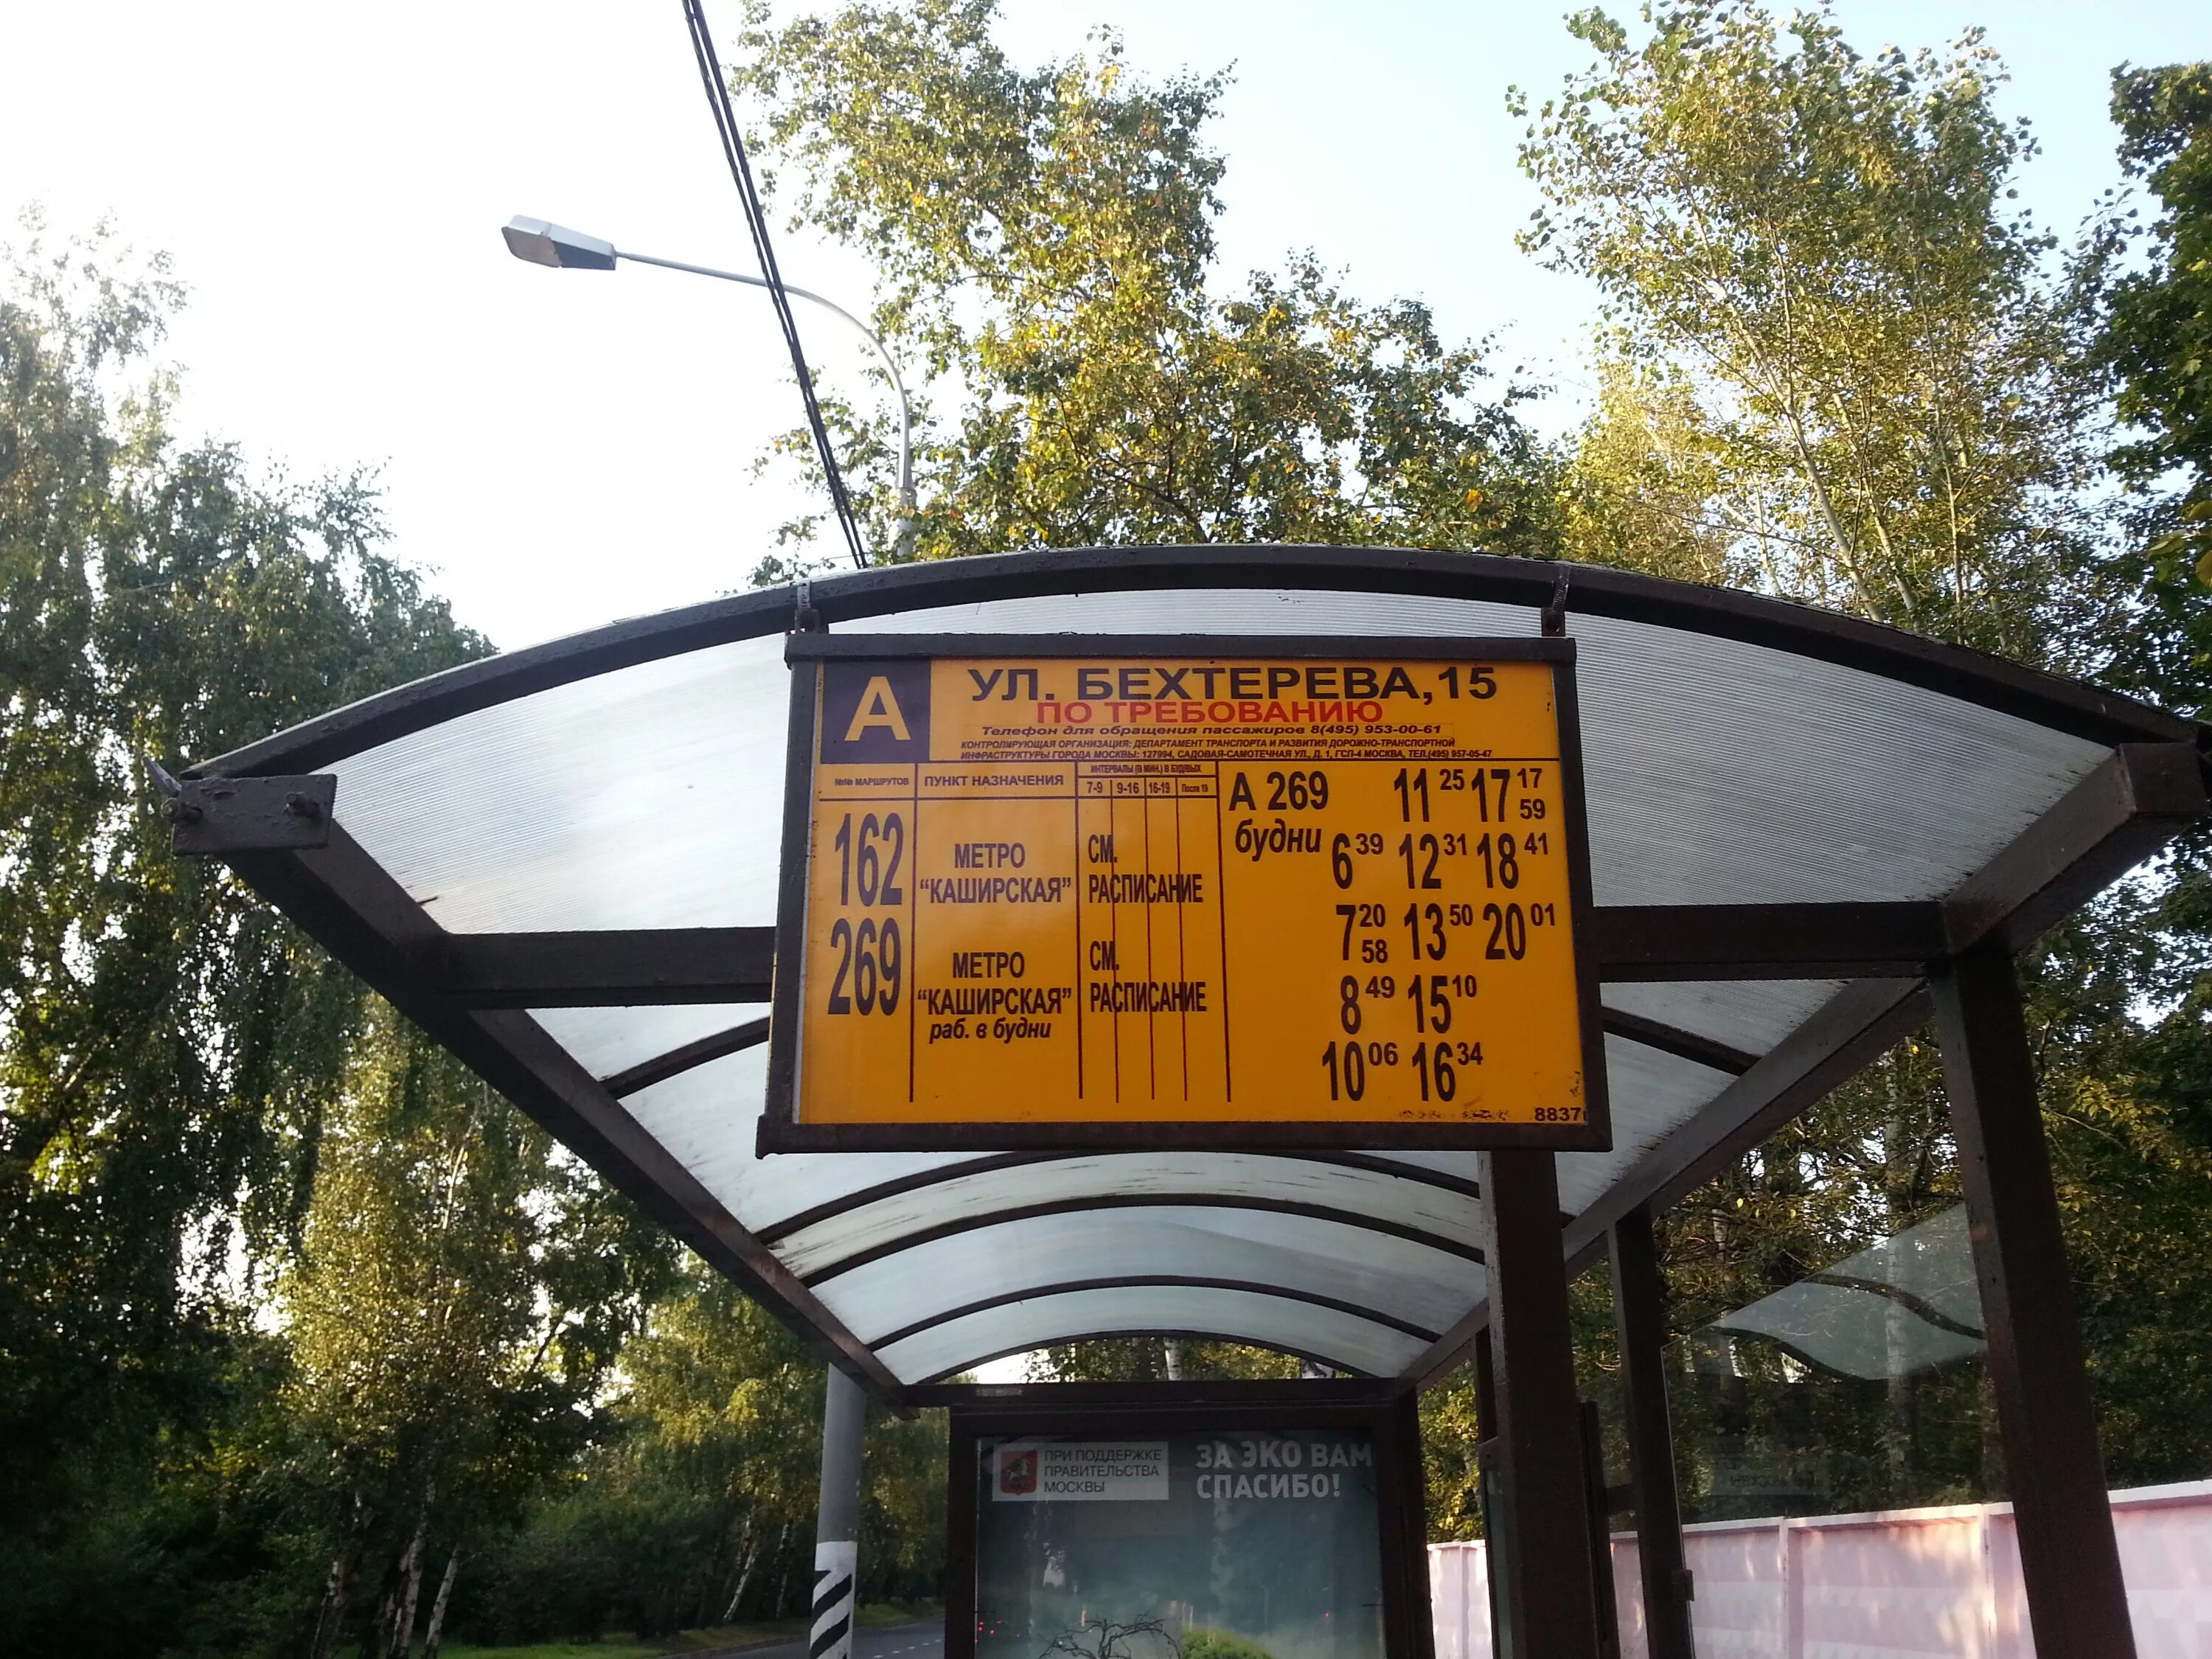 На автобусе на какой остановке выходить. Ул. Бехтерева, 15, Москва. Метро Каширская автобусная остановка. Улица с автобусной остановкой. Остановки по Требованию для автобусов.